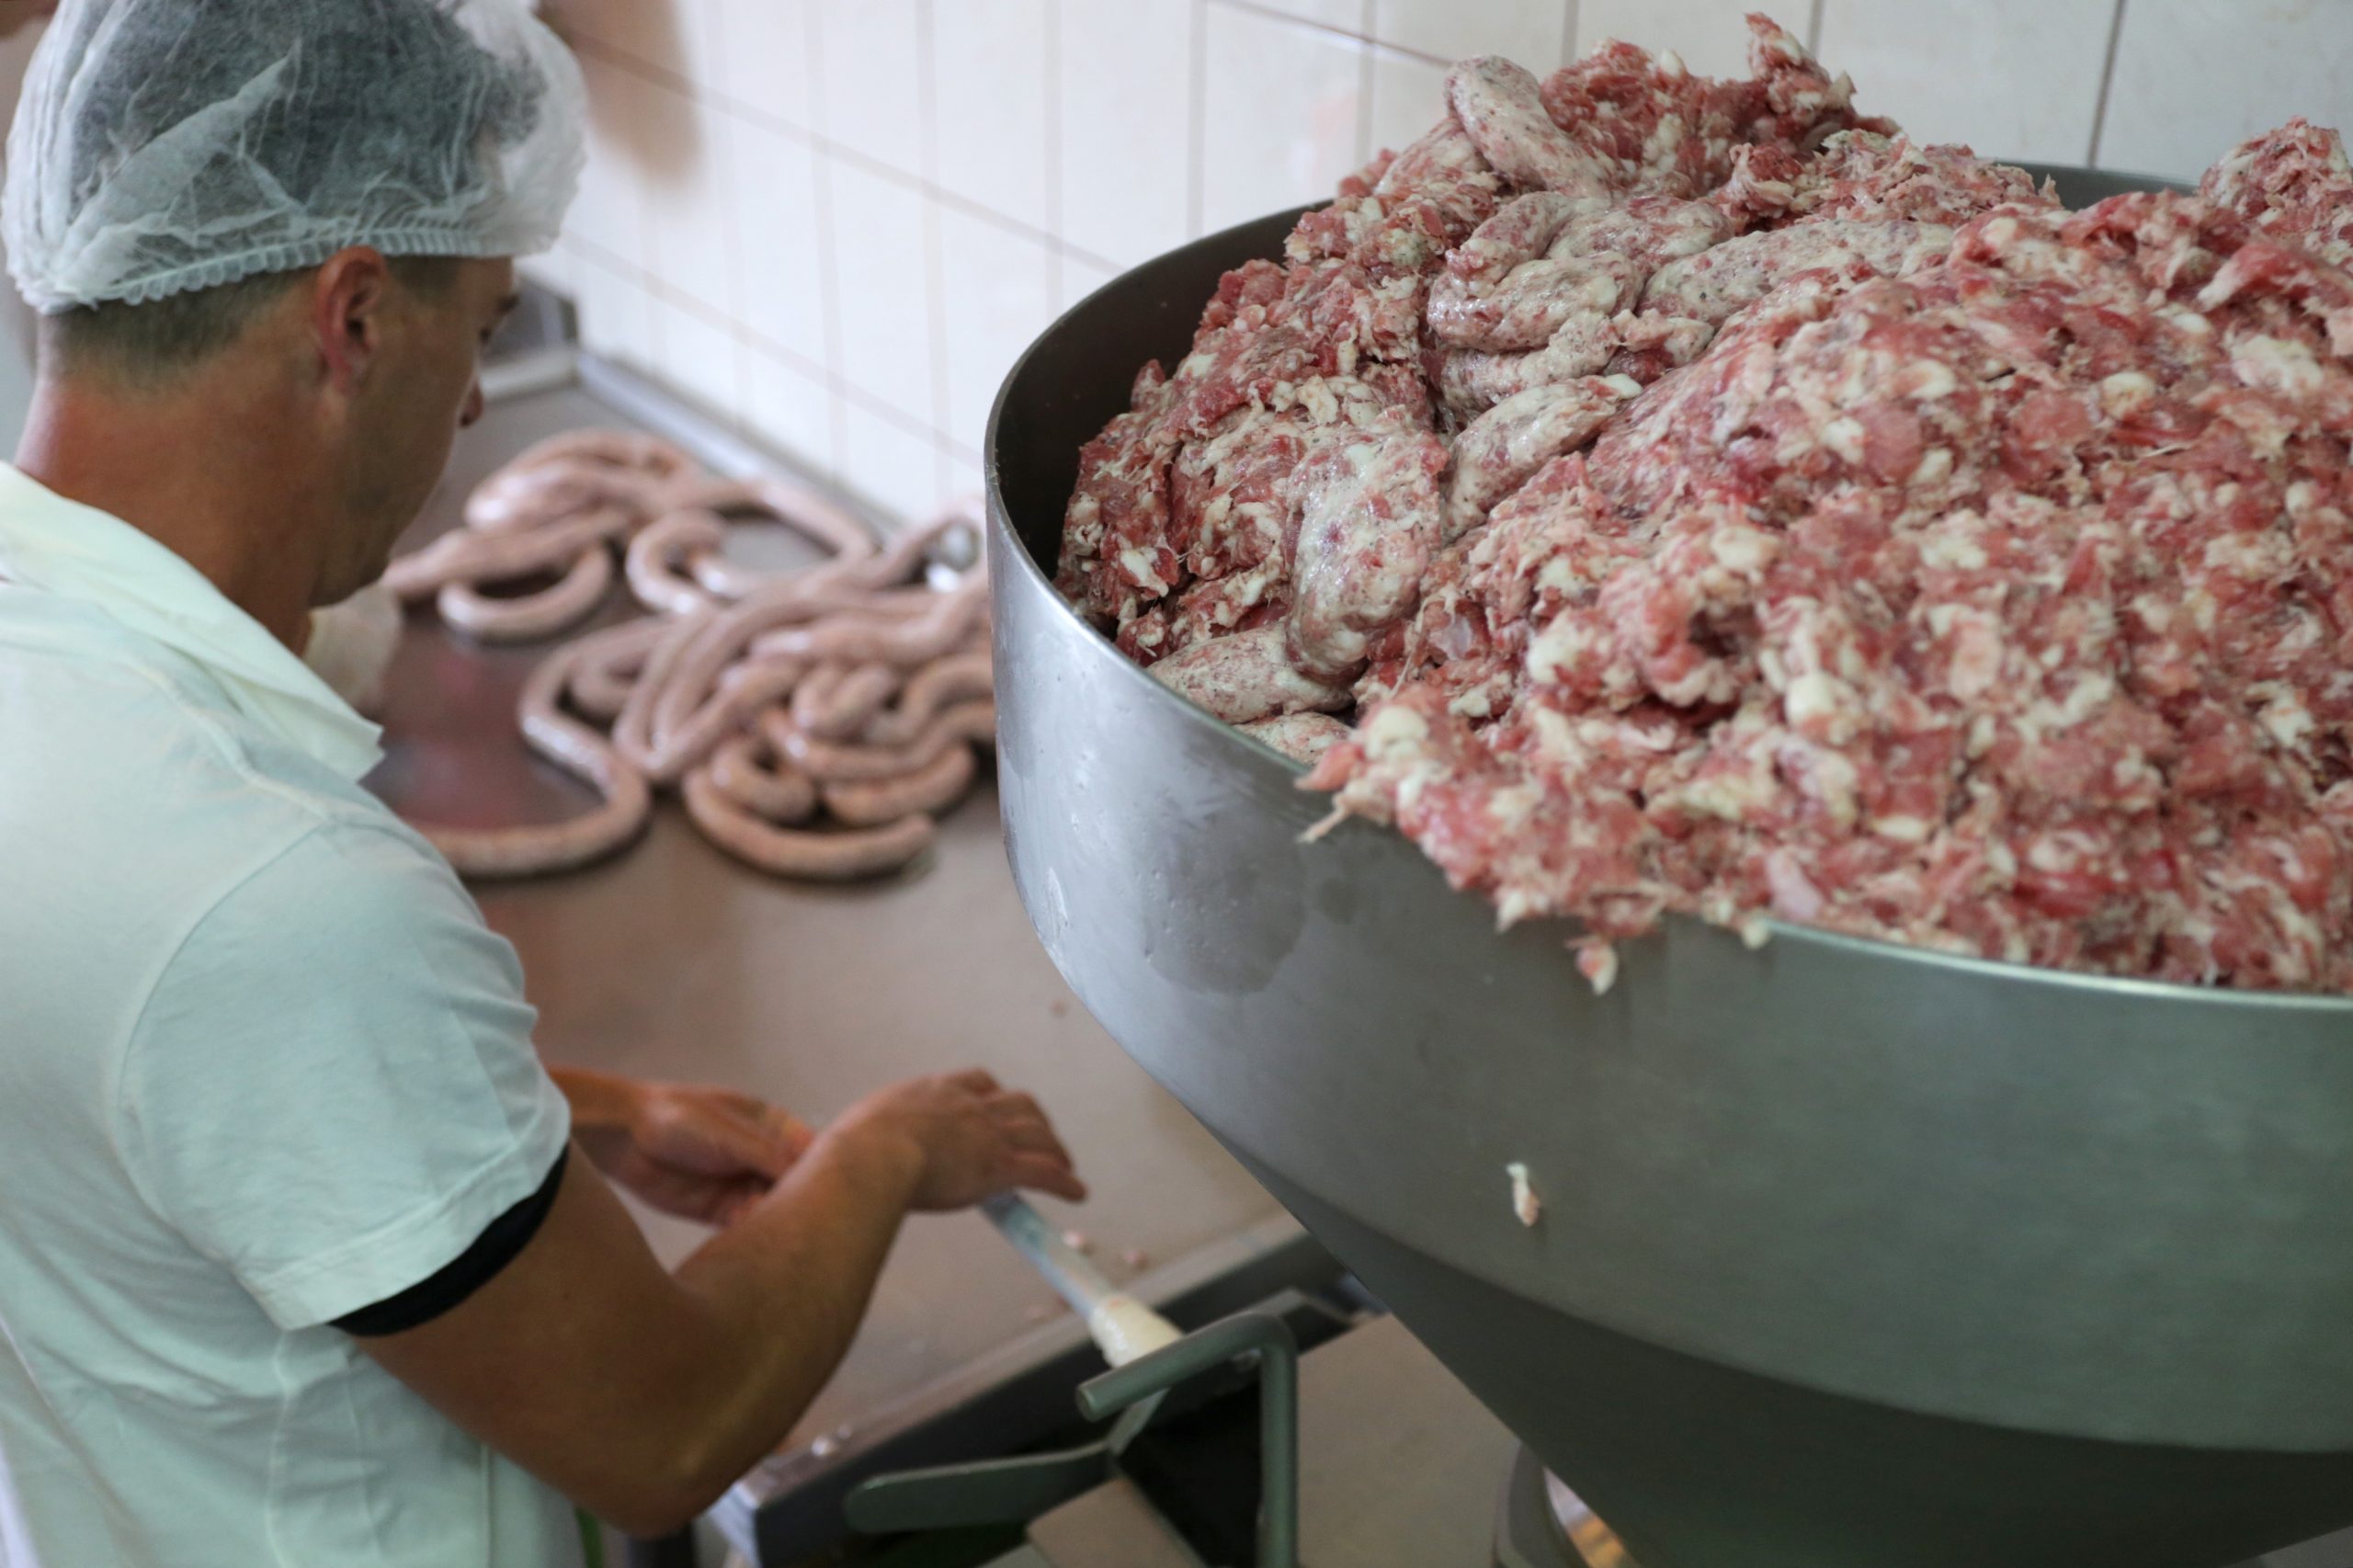 21.05.2018., Bregi - Dalibor Buretic, vlasnik tvrtke Buretic koja se bavi preradom mesa i mesnih proizvoda.
Photo: Nel Pavletic/PIXSELL